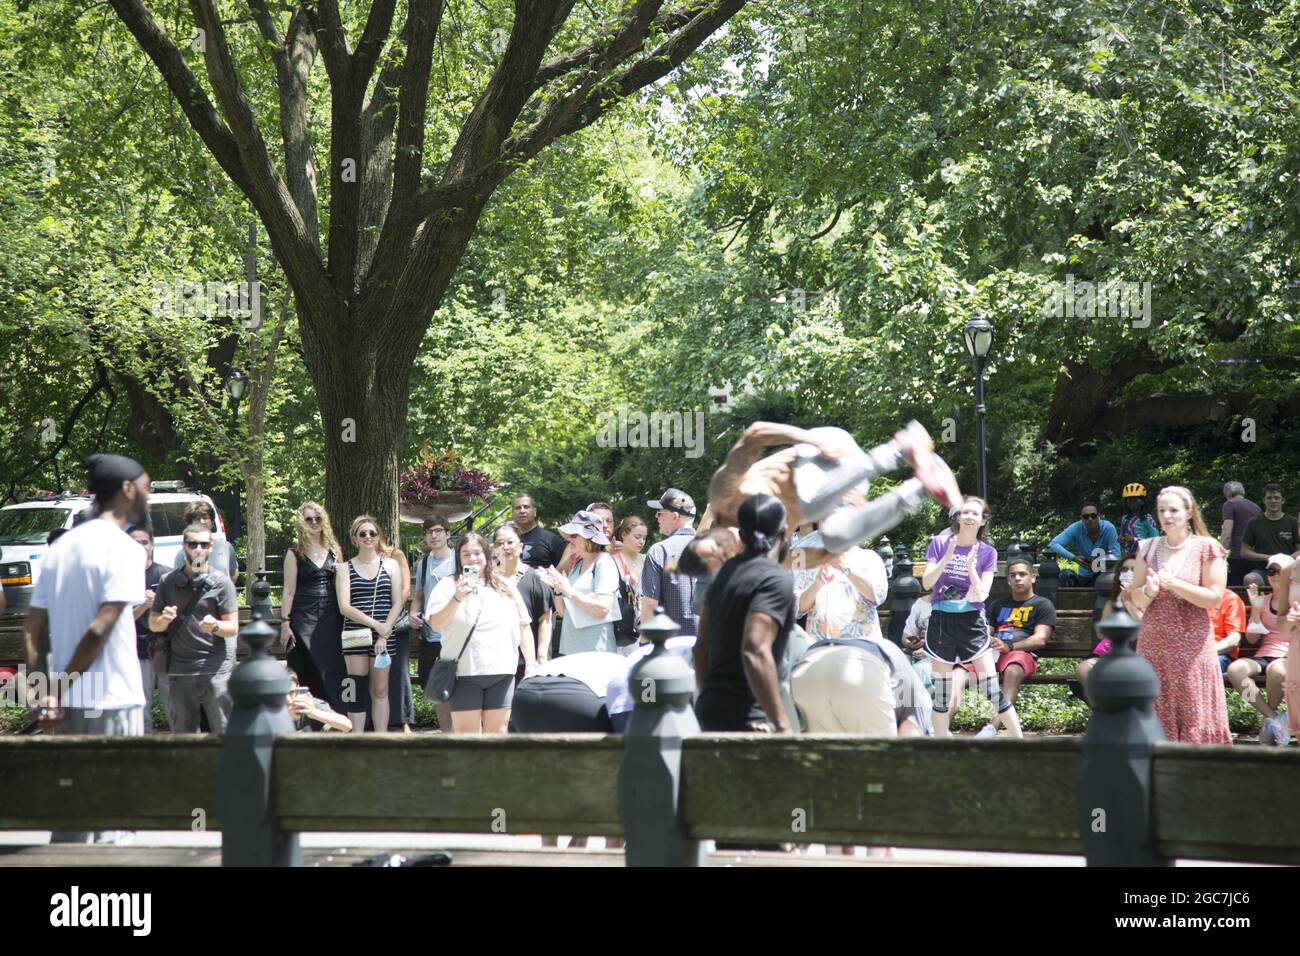 Les artistes acrobatiques font participer les touristes et les habitants de la région à leurs talents et à leur style humoristique. Central Park, New York. Banque D'Images